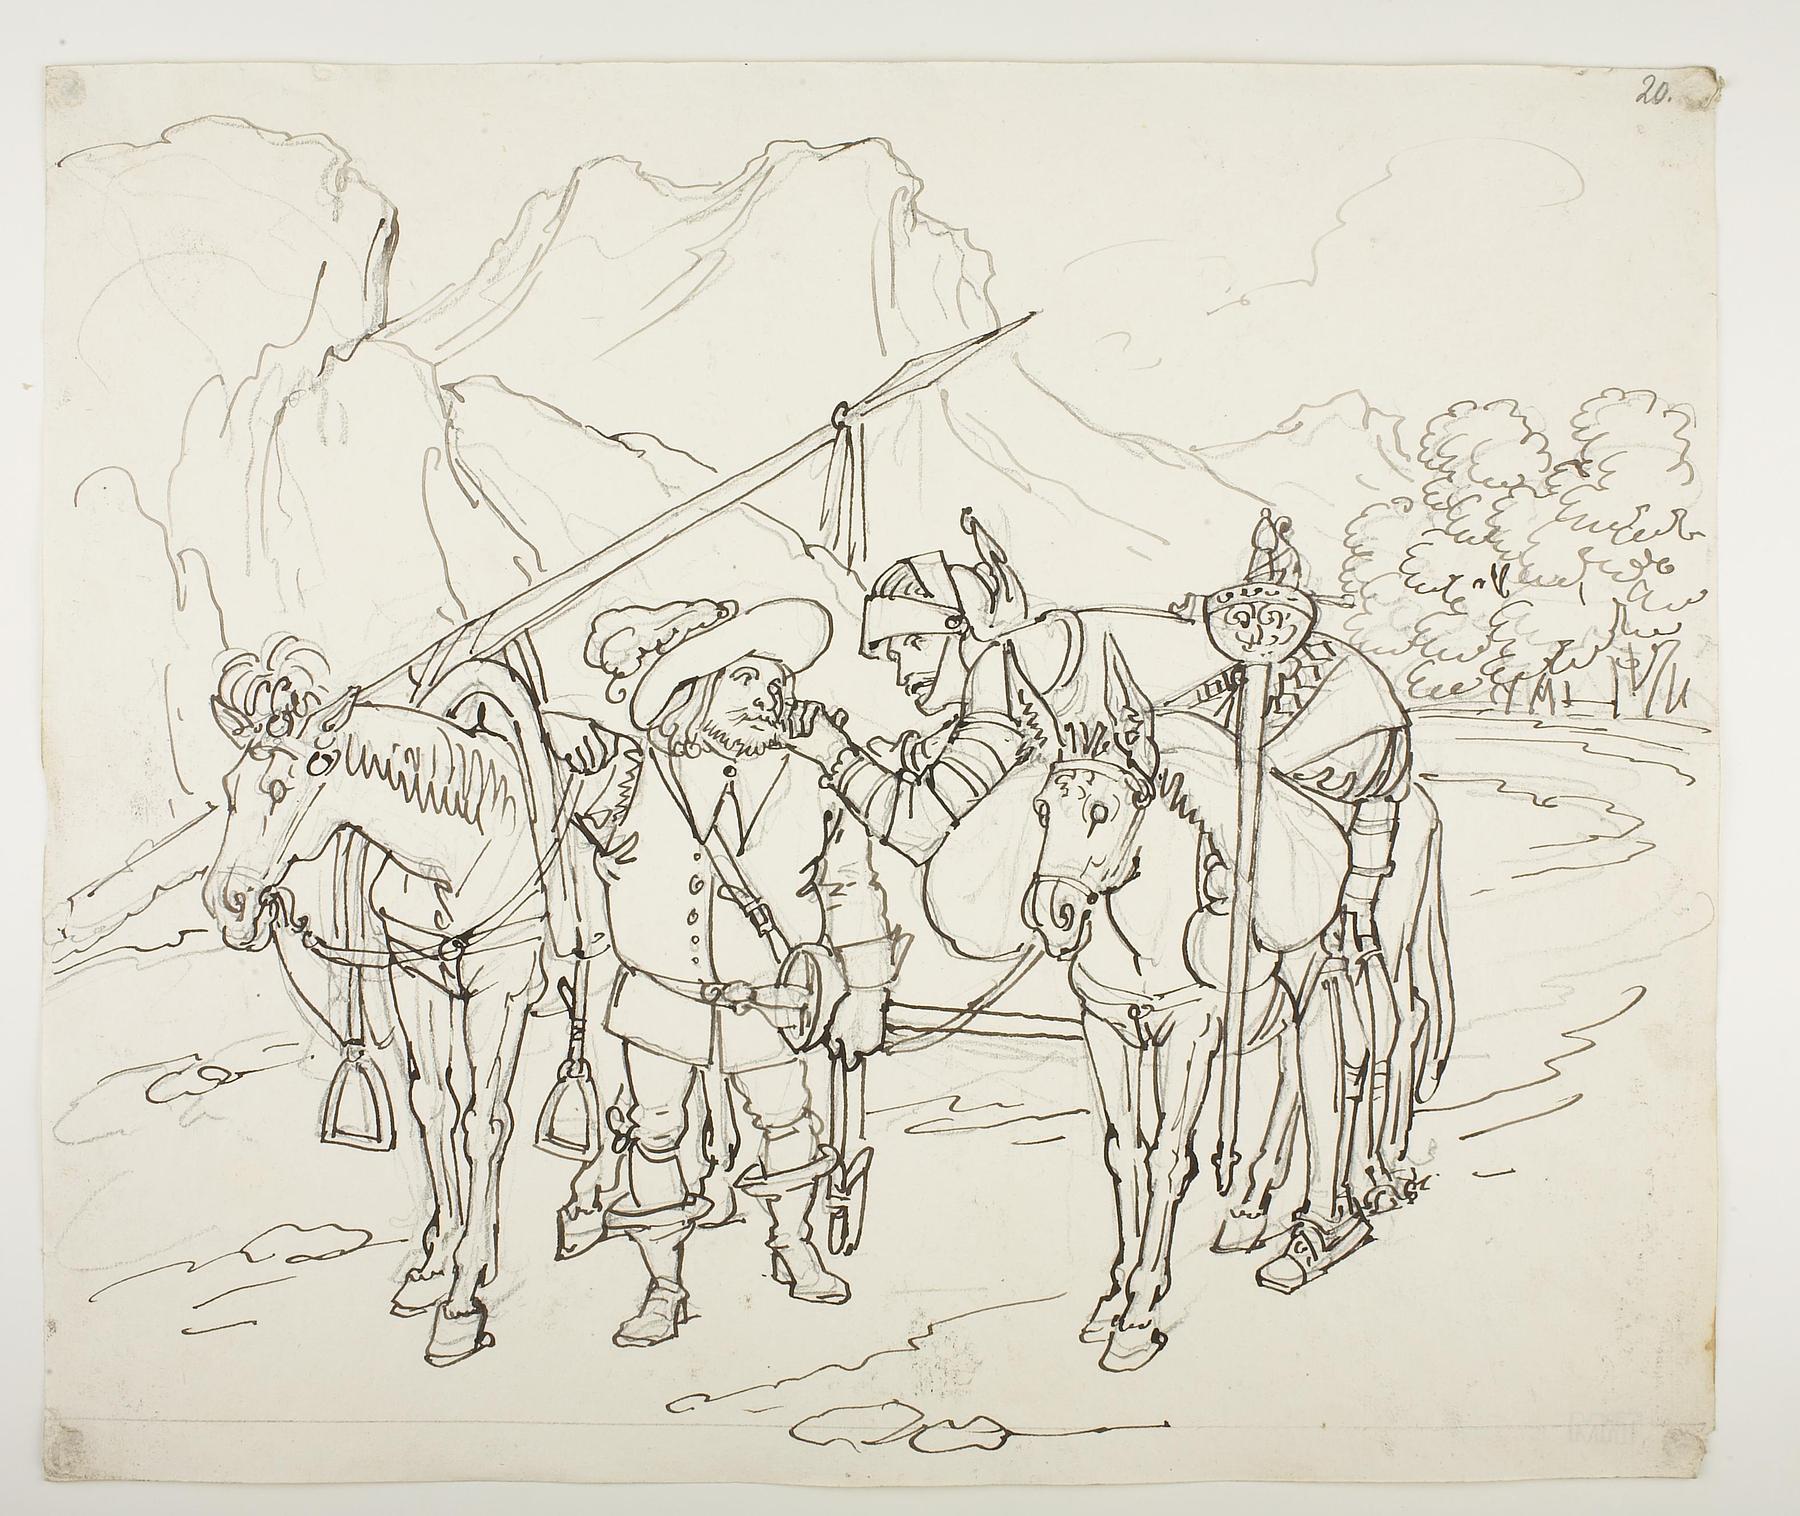 Don Quixote ligger mørbanket over æselets ryg, Sancho Panza gående, D578